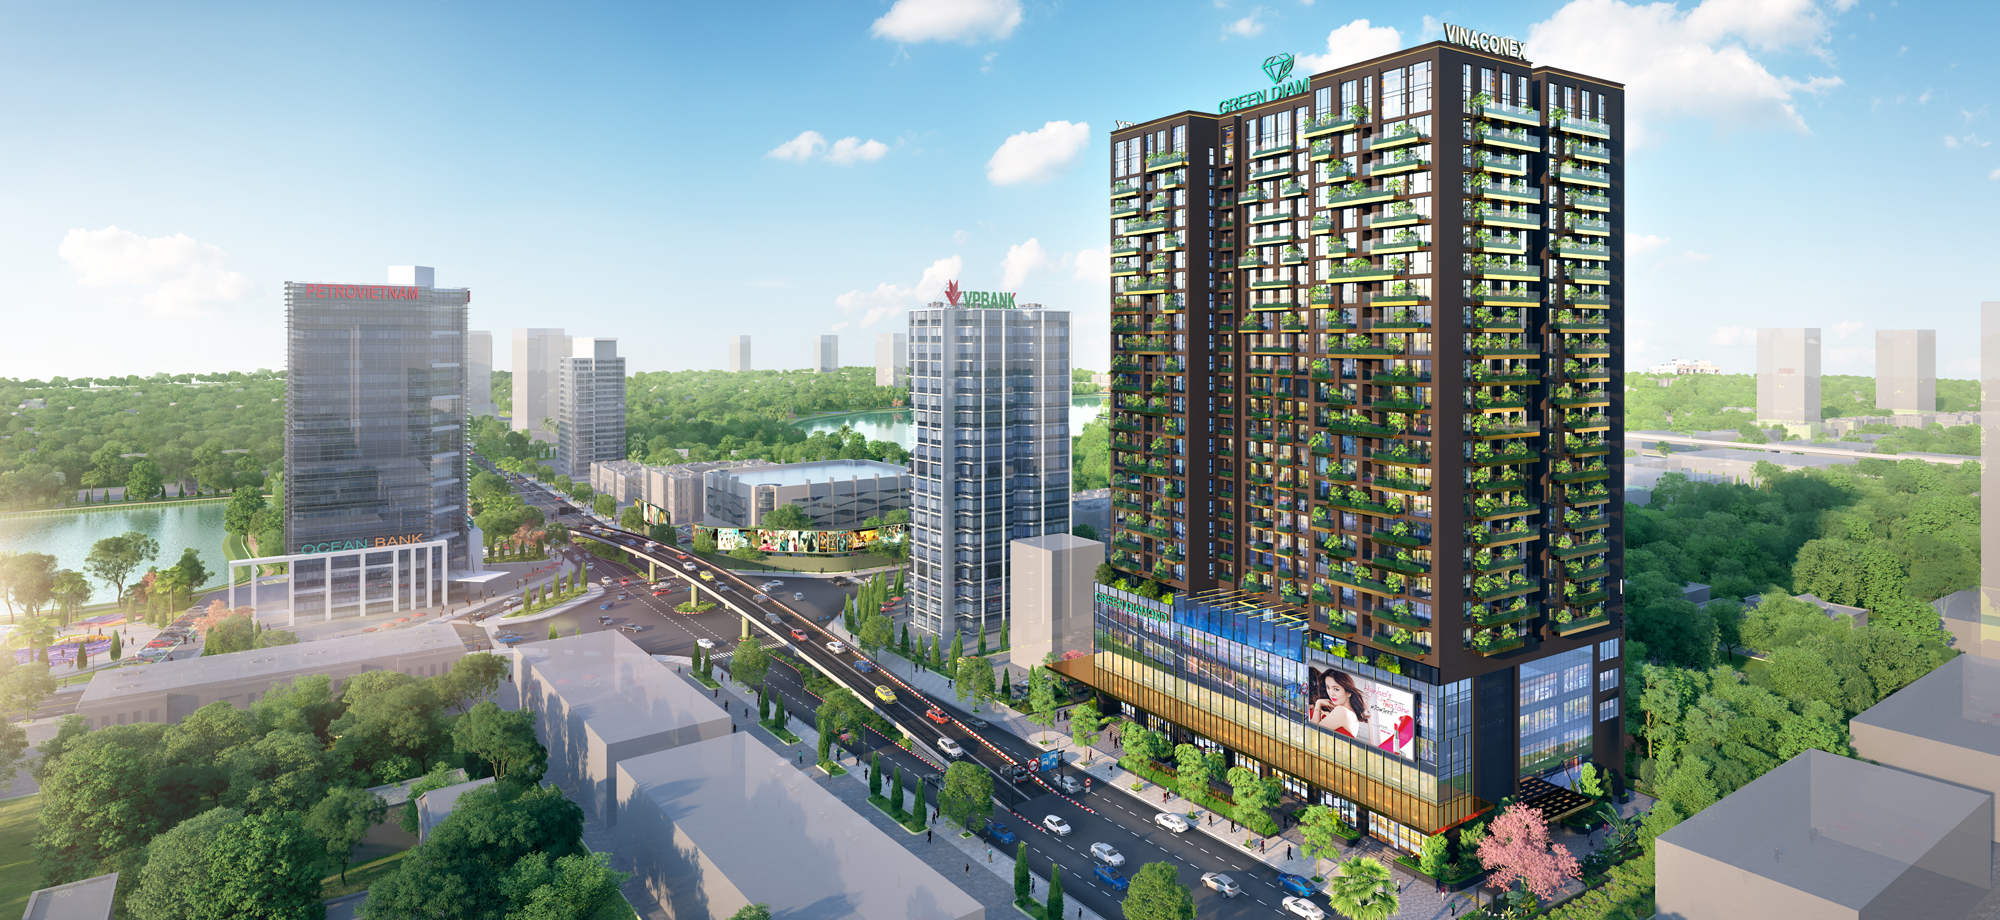 Chung cư cao cấp Green Dimond Building - Kim Cương Xanh giữa nội thành thành phố